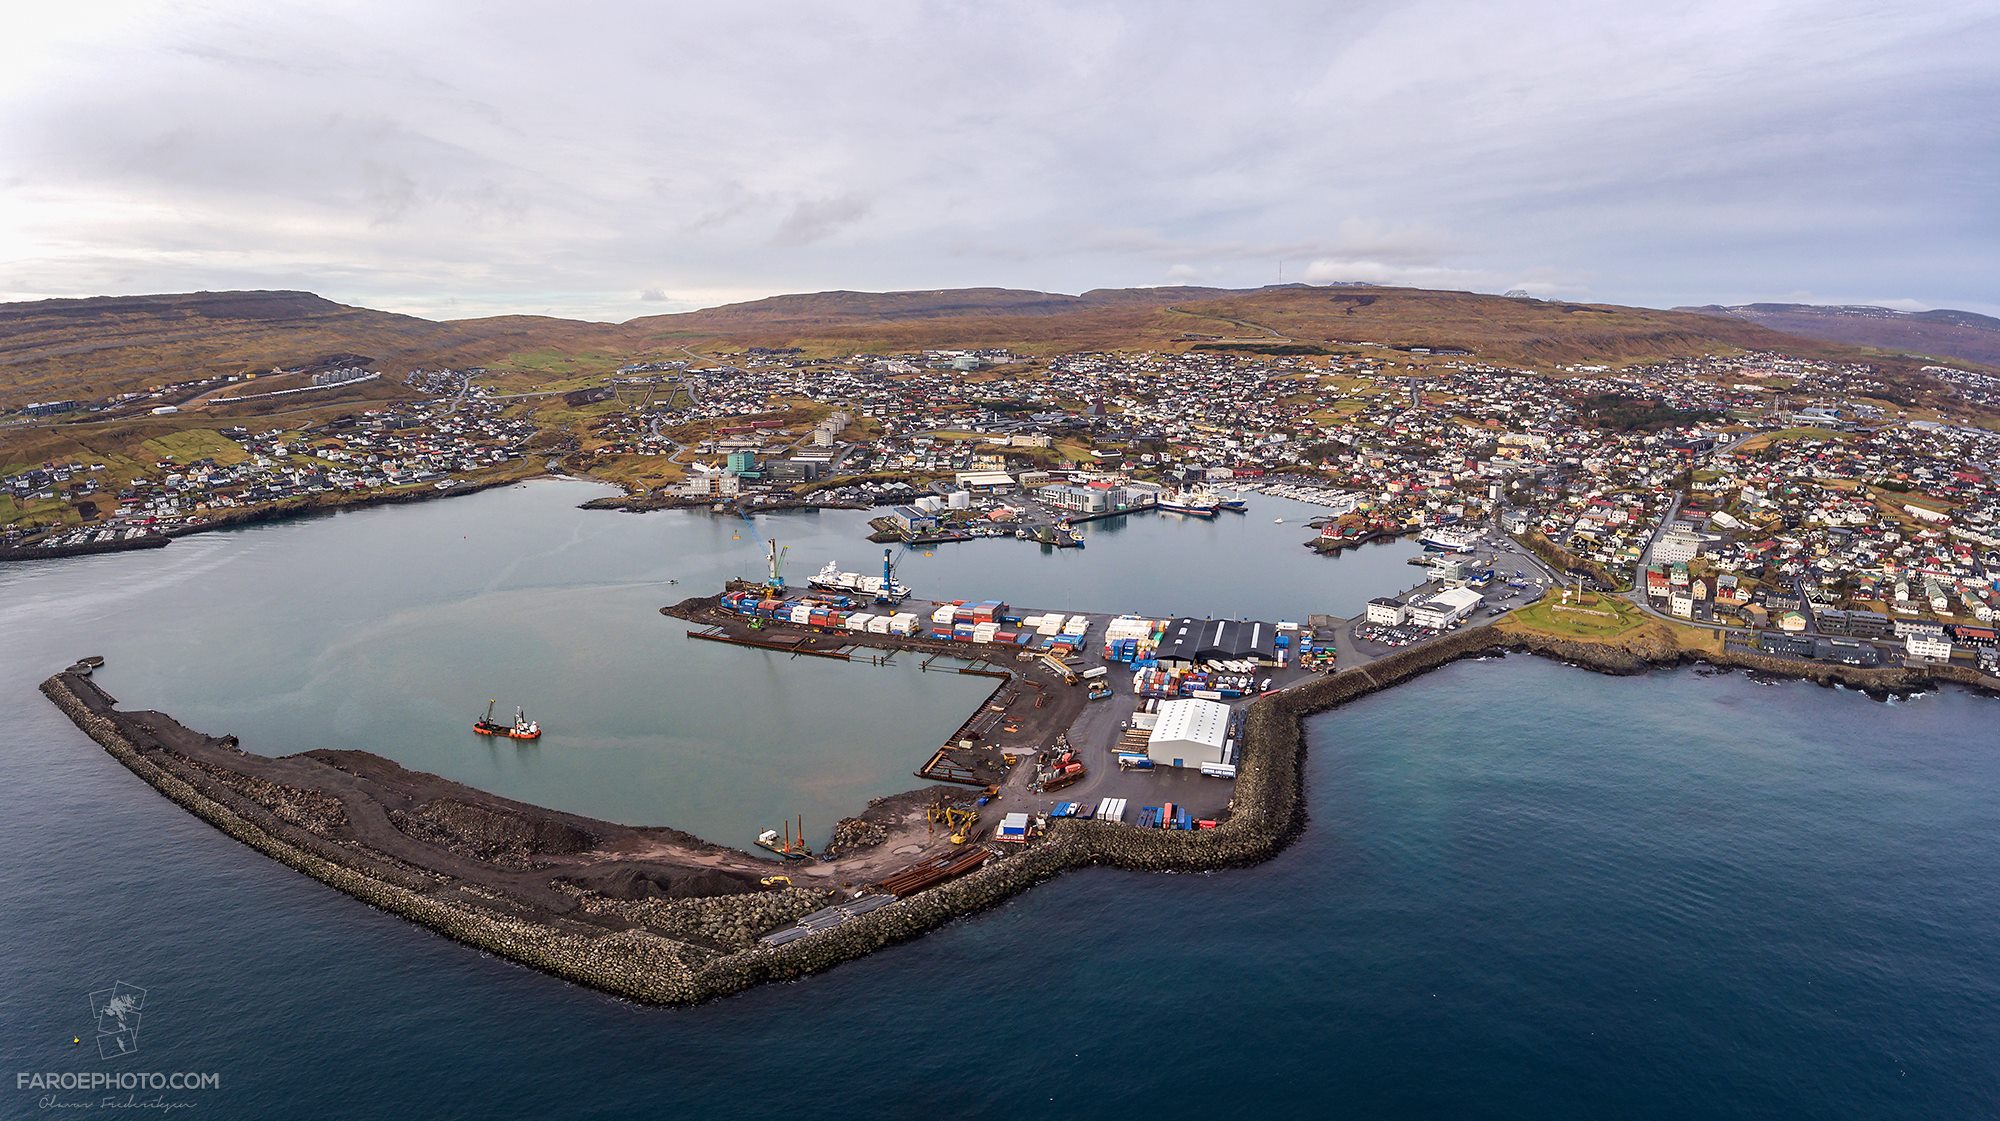 Landssjúkrahúsið - National Hospital of the Faroe Islands, Tórshavnar Havn, Faroe Ship, Hotel Føroyar, Skansin и Betri в Торсхавн..jpg